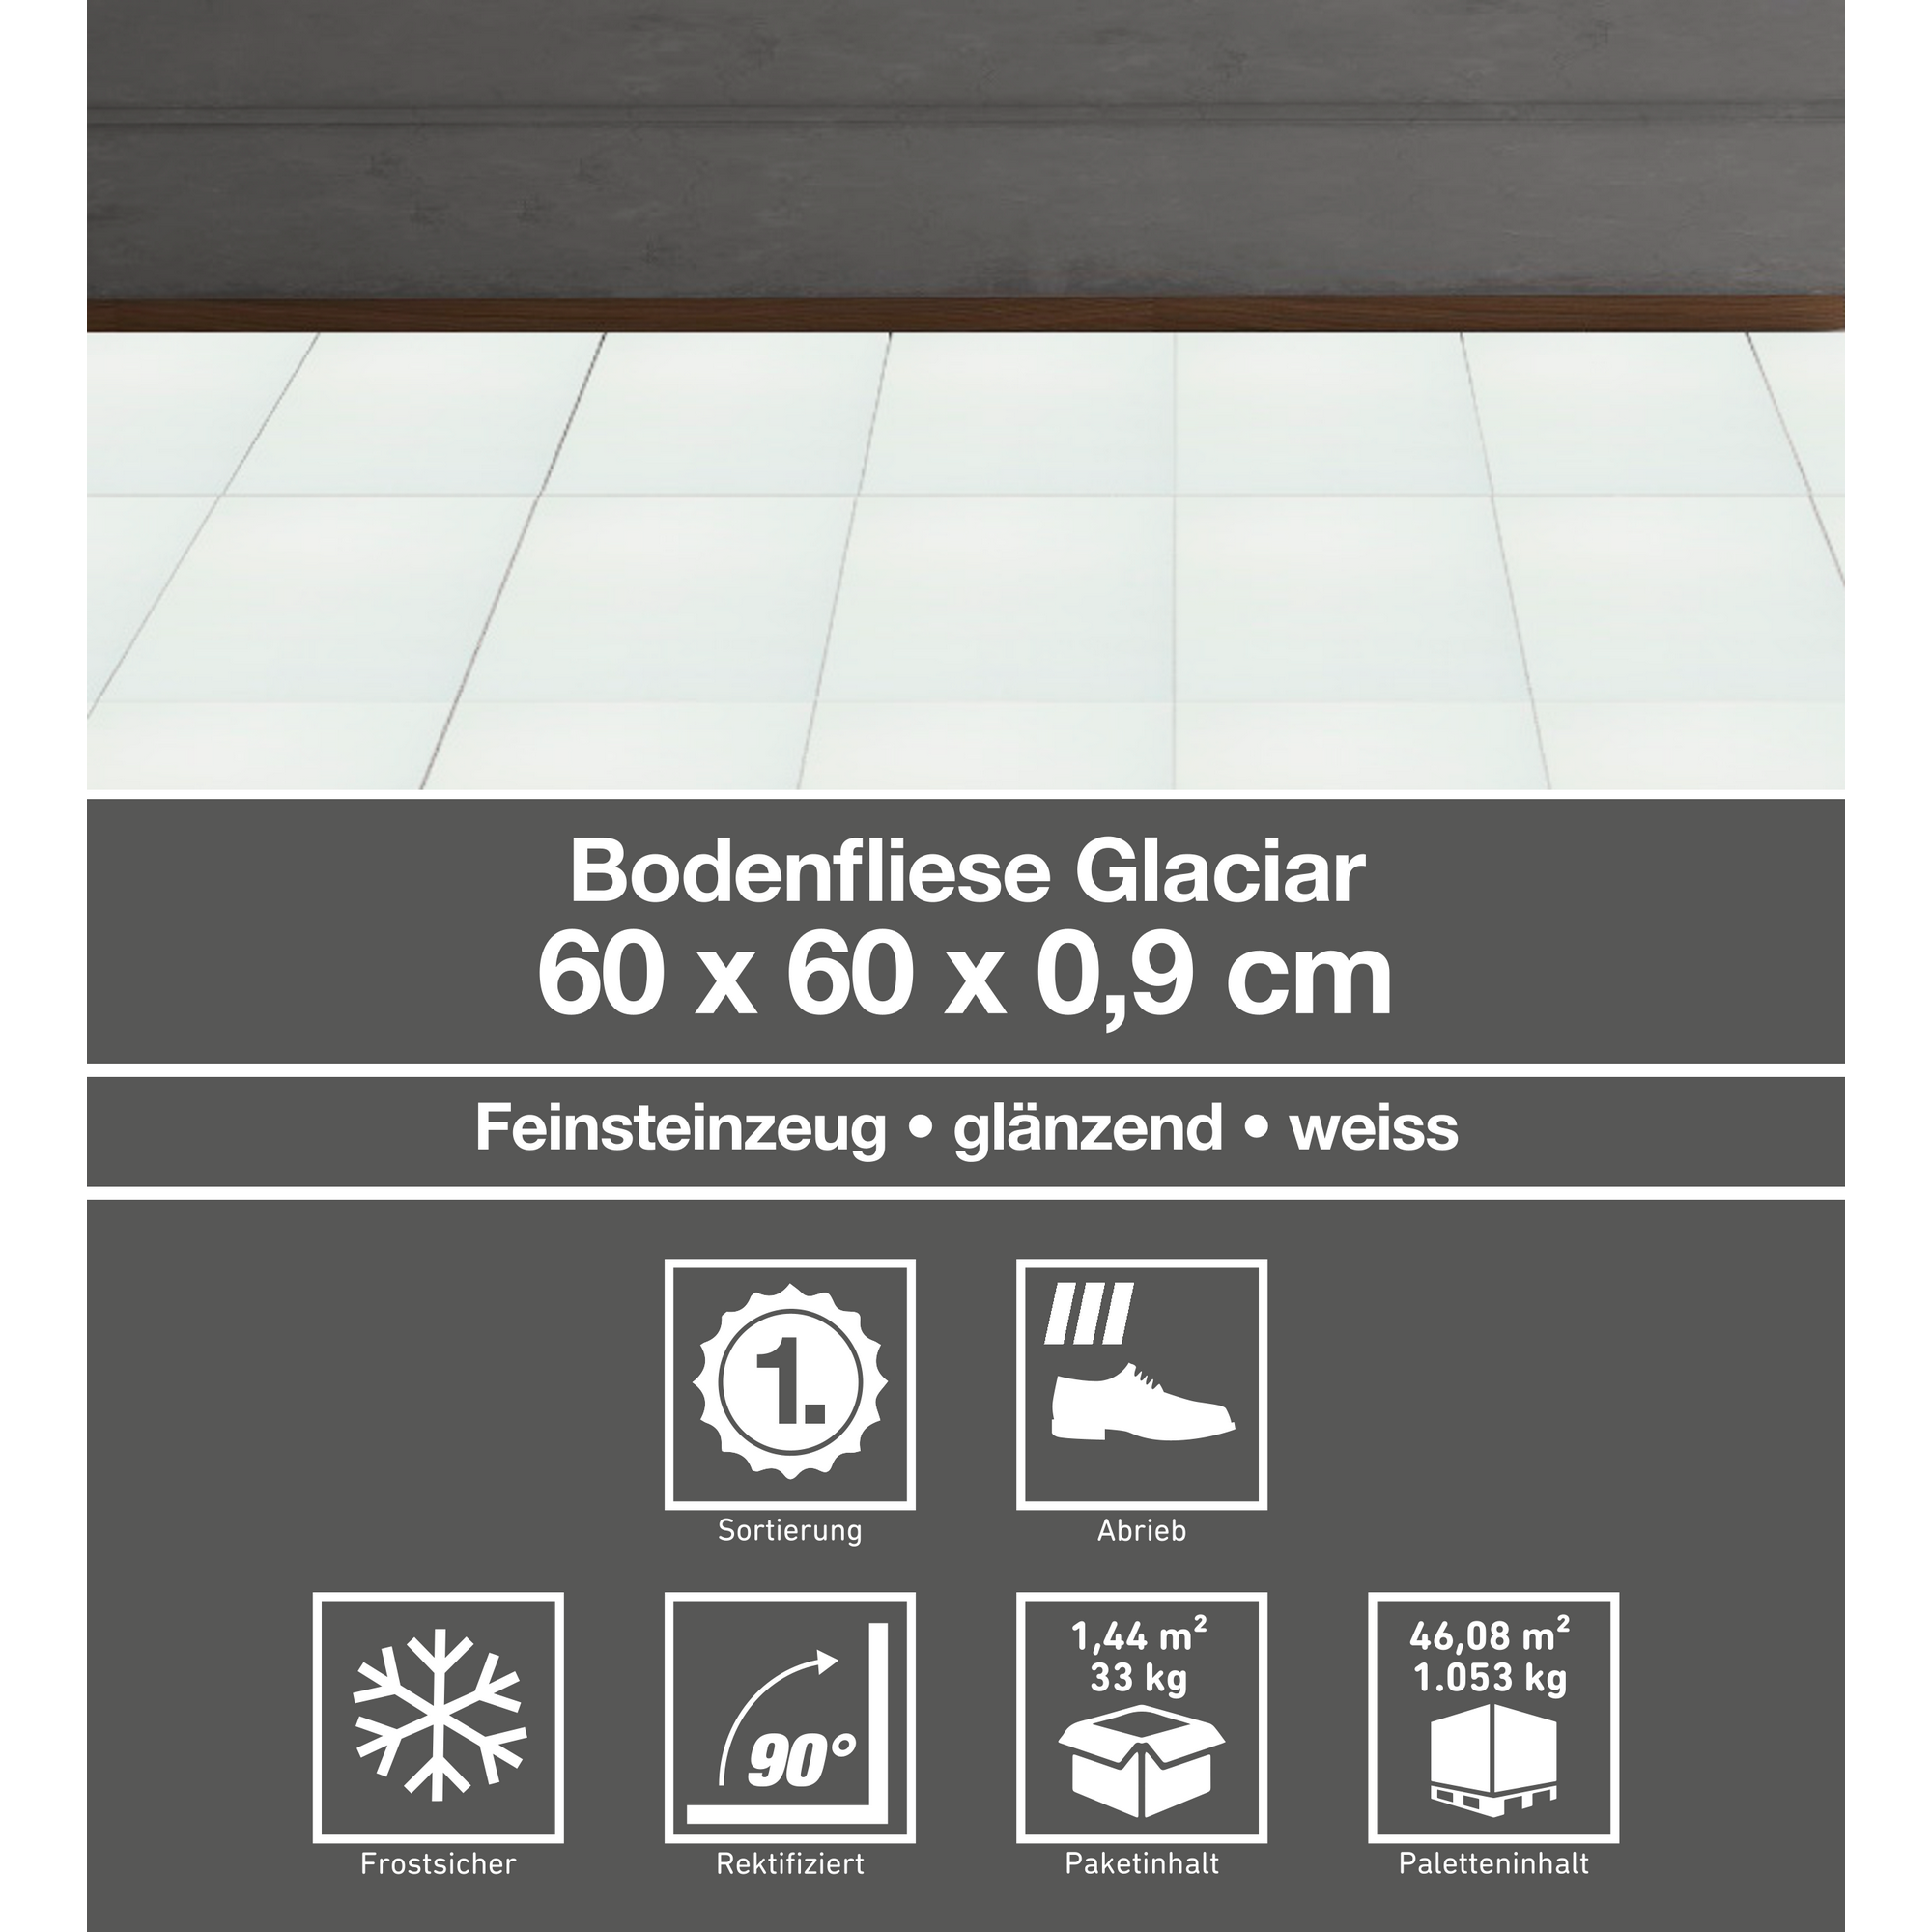 Bodenfliese 'Glaciar' Feinsteinzeug weiß 60 x 60 cm + product picture